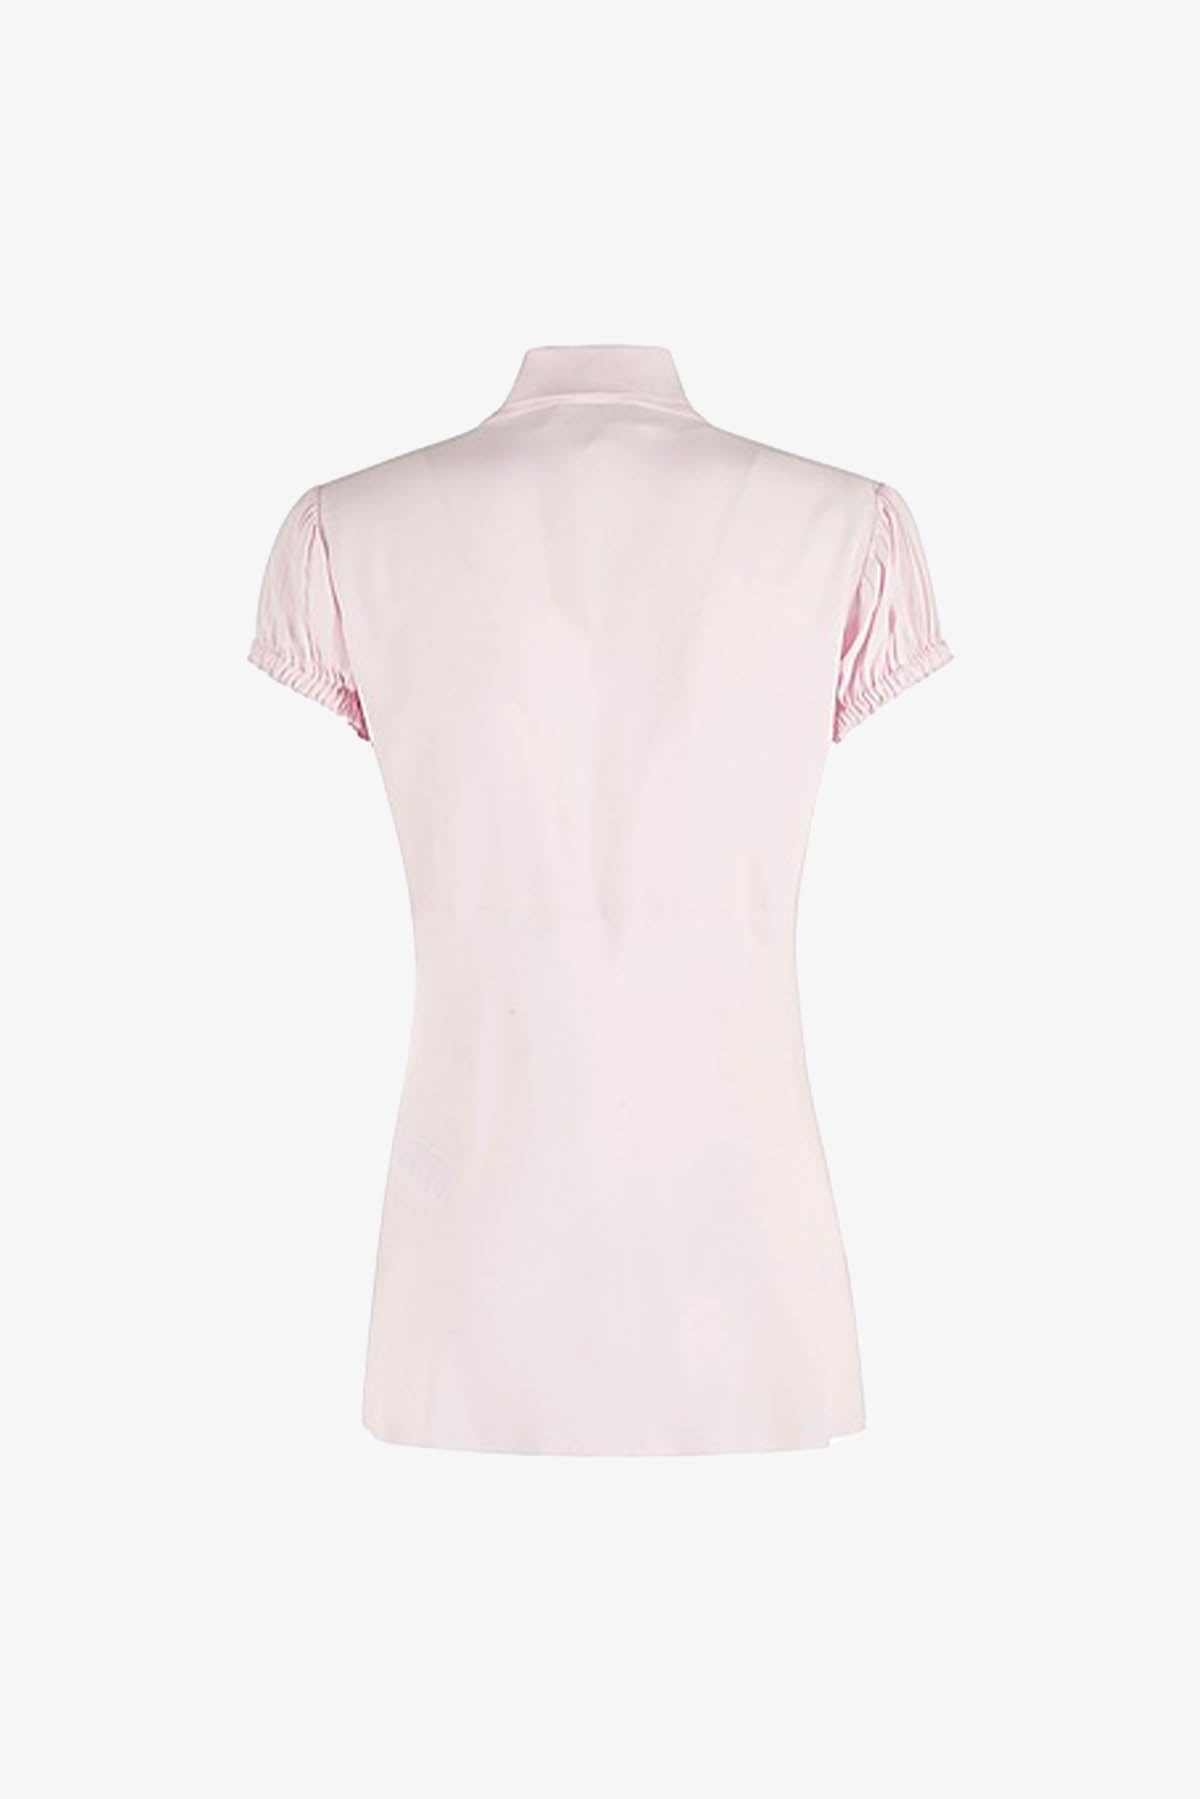 N21 CAMICIA  Camicia Rosa con Foulard Maniche Corte Donna N21